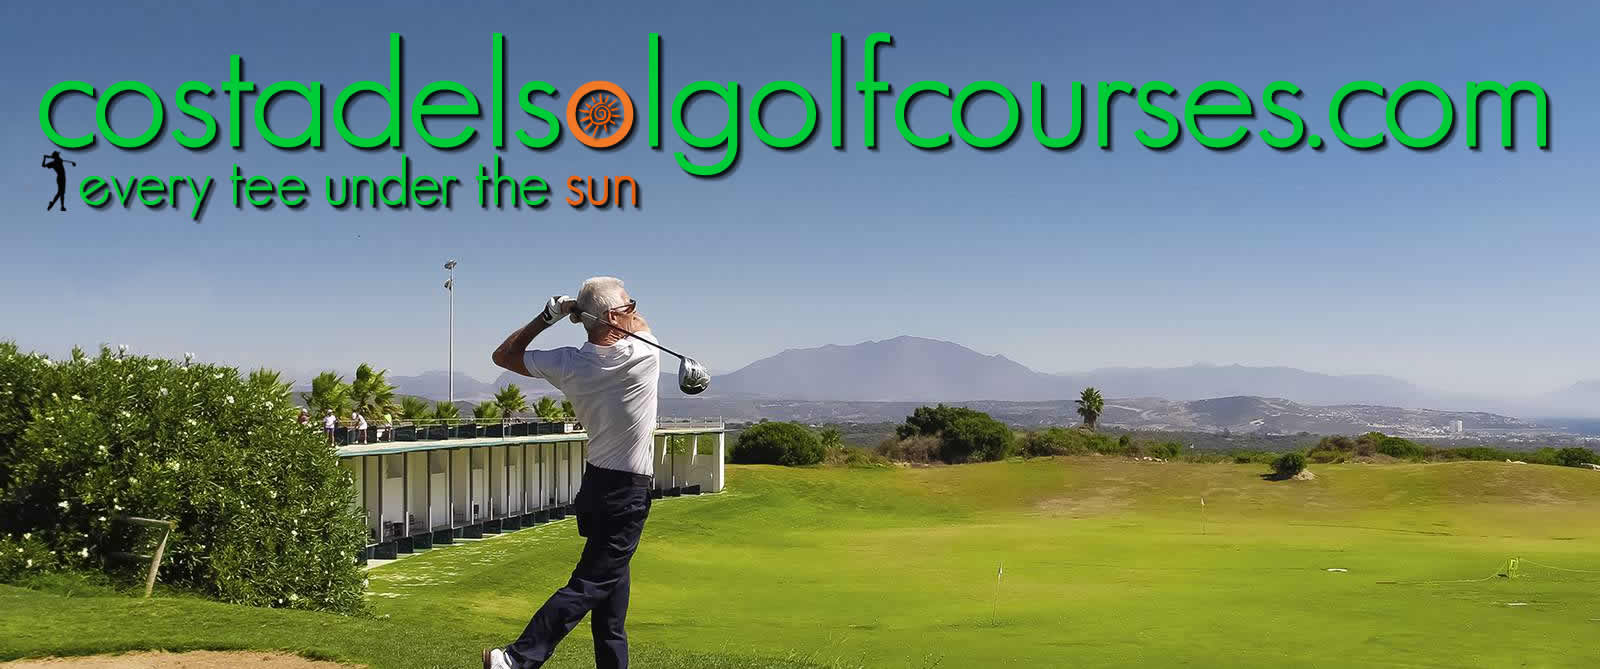 Costa del Sol Golf Courses Online